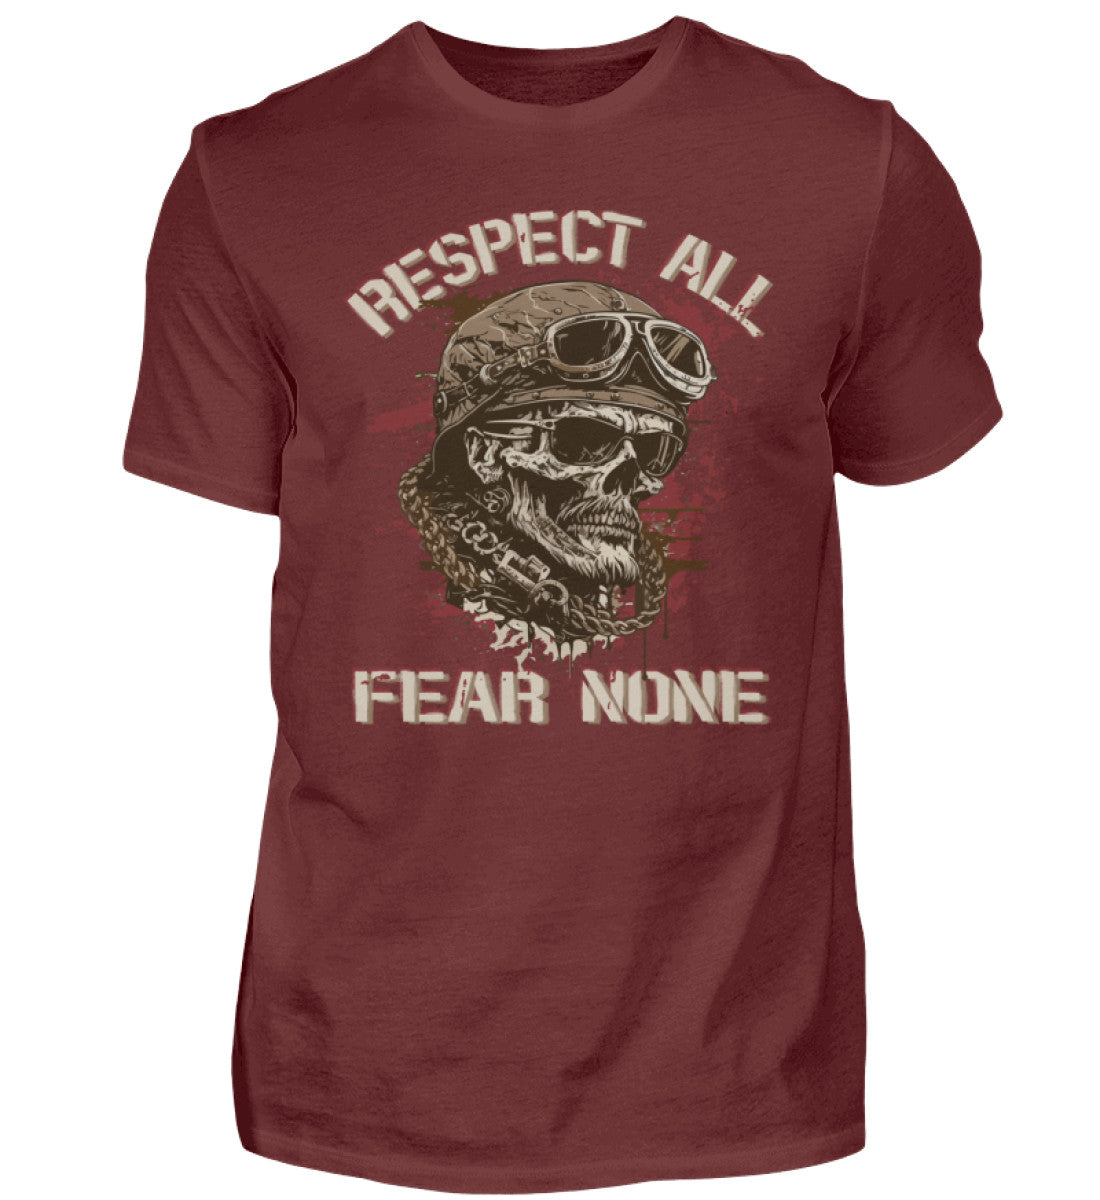 Ein Biker T-Shirt für Motorradfahrer von Wingbikers mit dem Aufdruck, Respect All - Fear None, in weinrot.